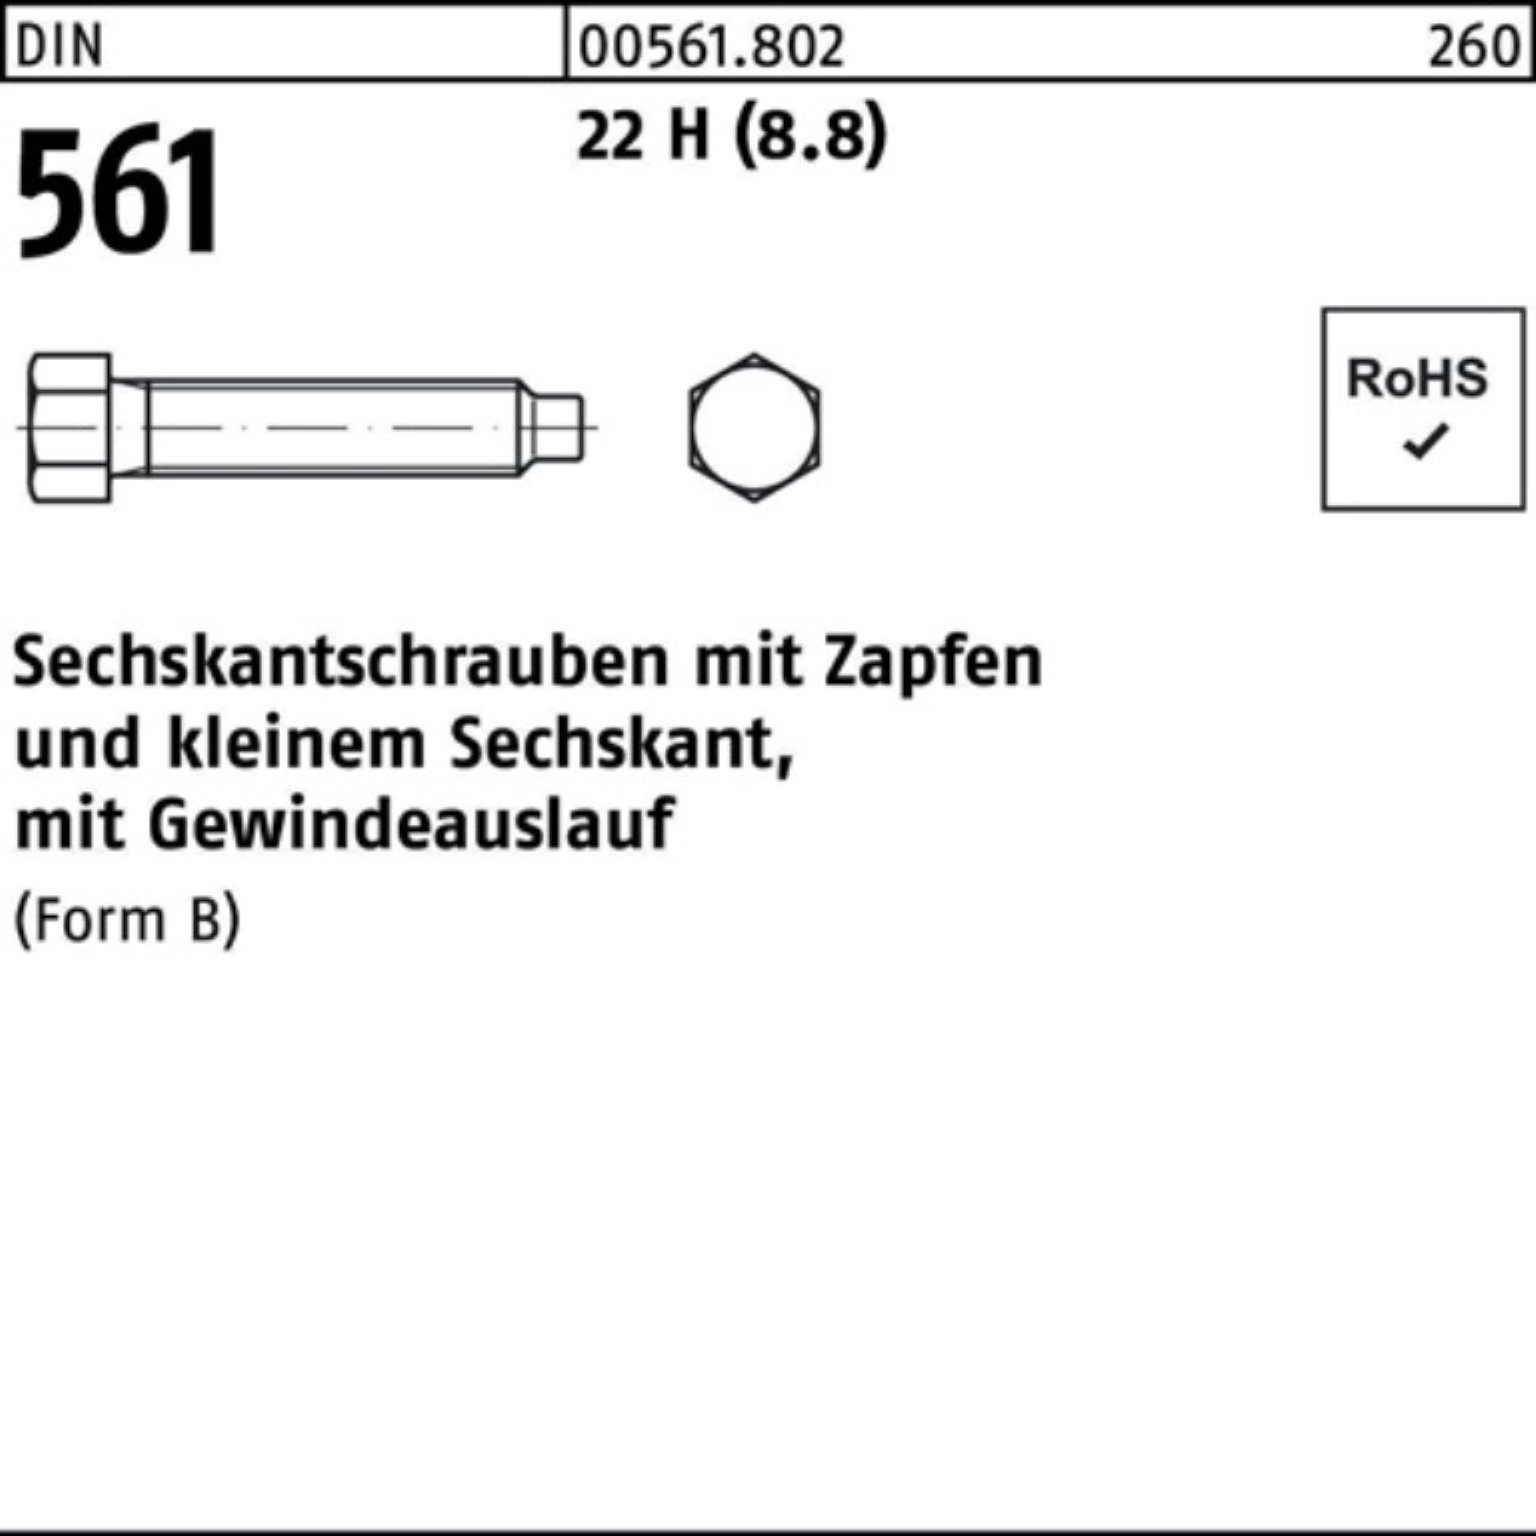 Reyher Sechskantschraube 100er DIN Pack (8.8) Sechskantschraube BM Zapfen 12x 561 50 22 H 25 St